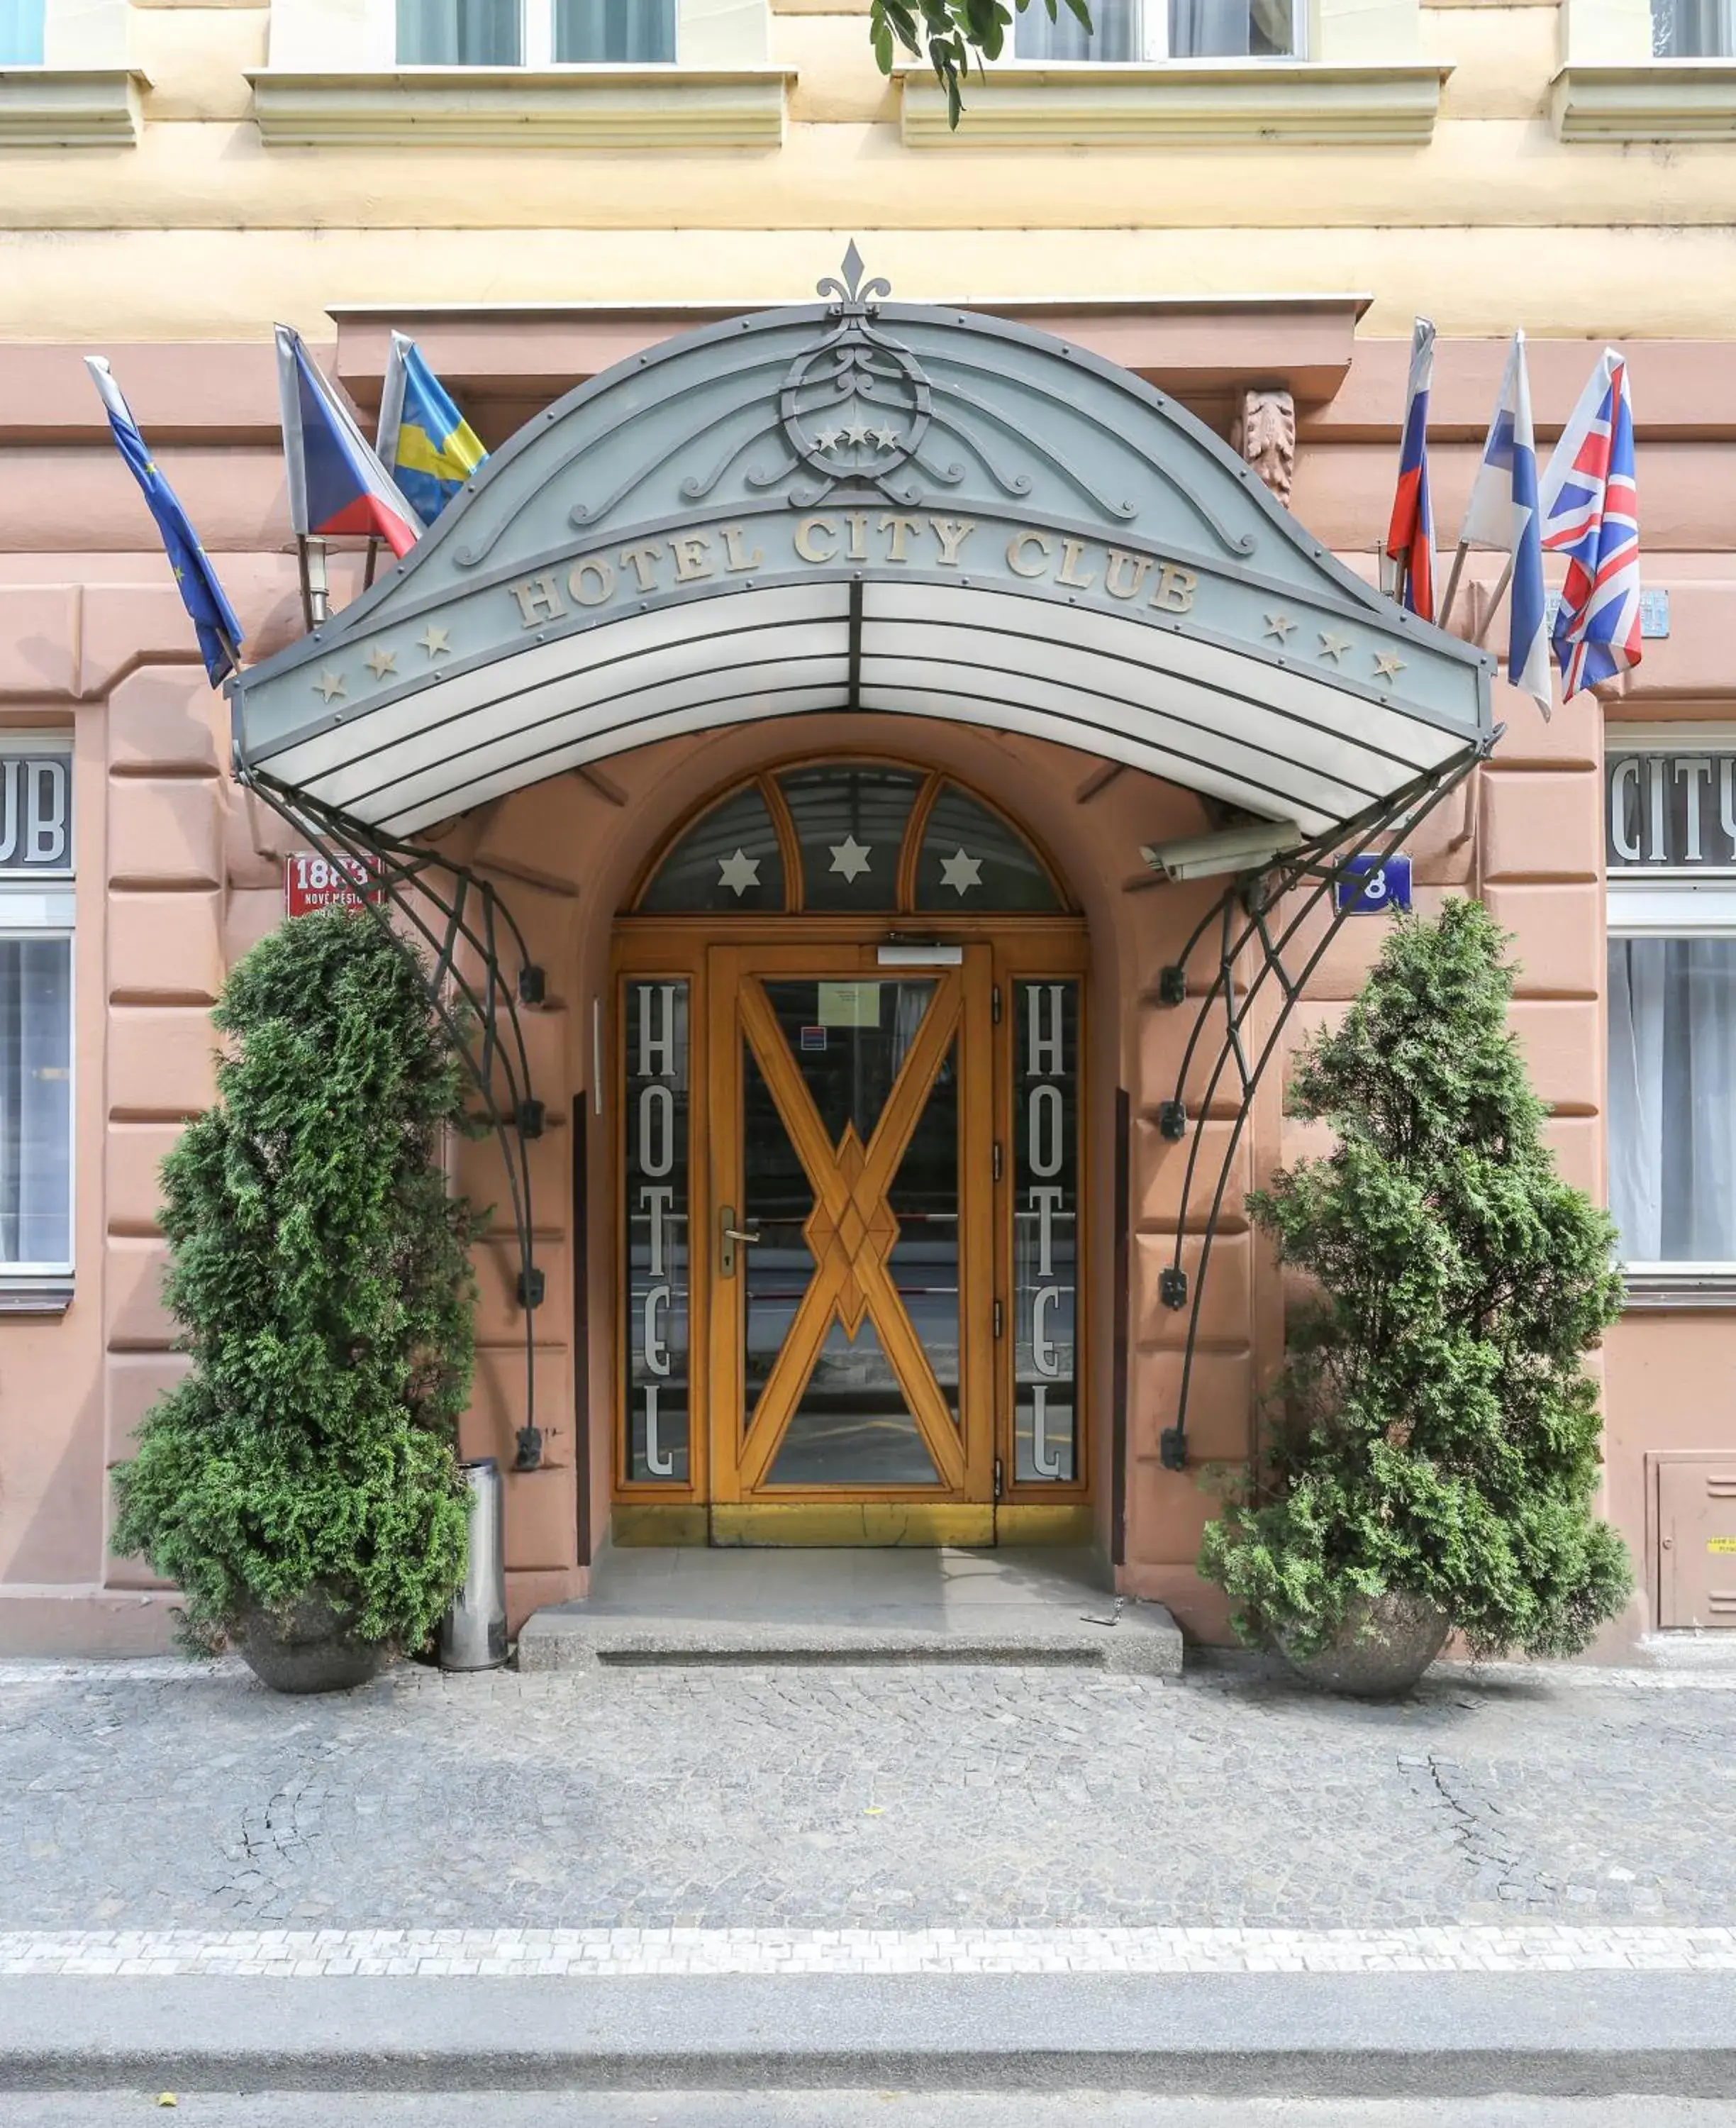 Facade/entrance in City Club Prague